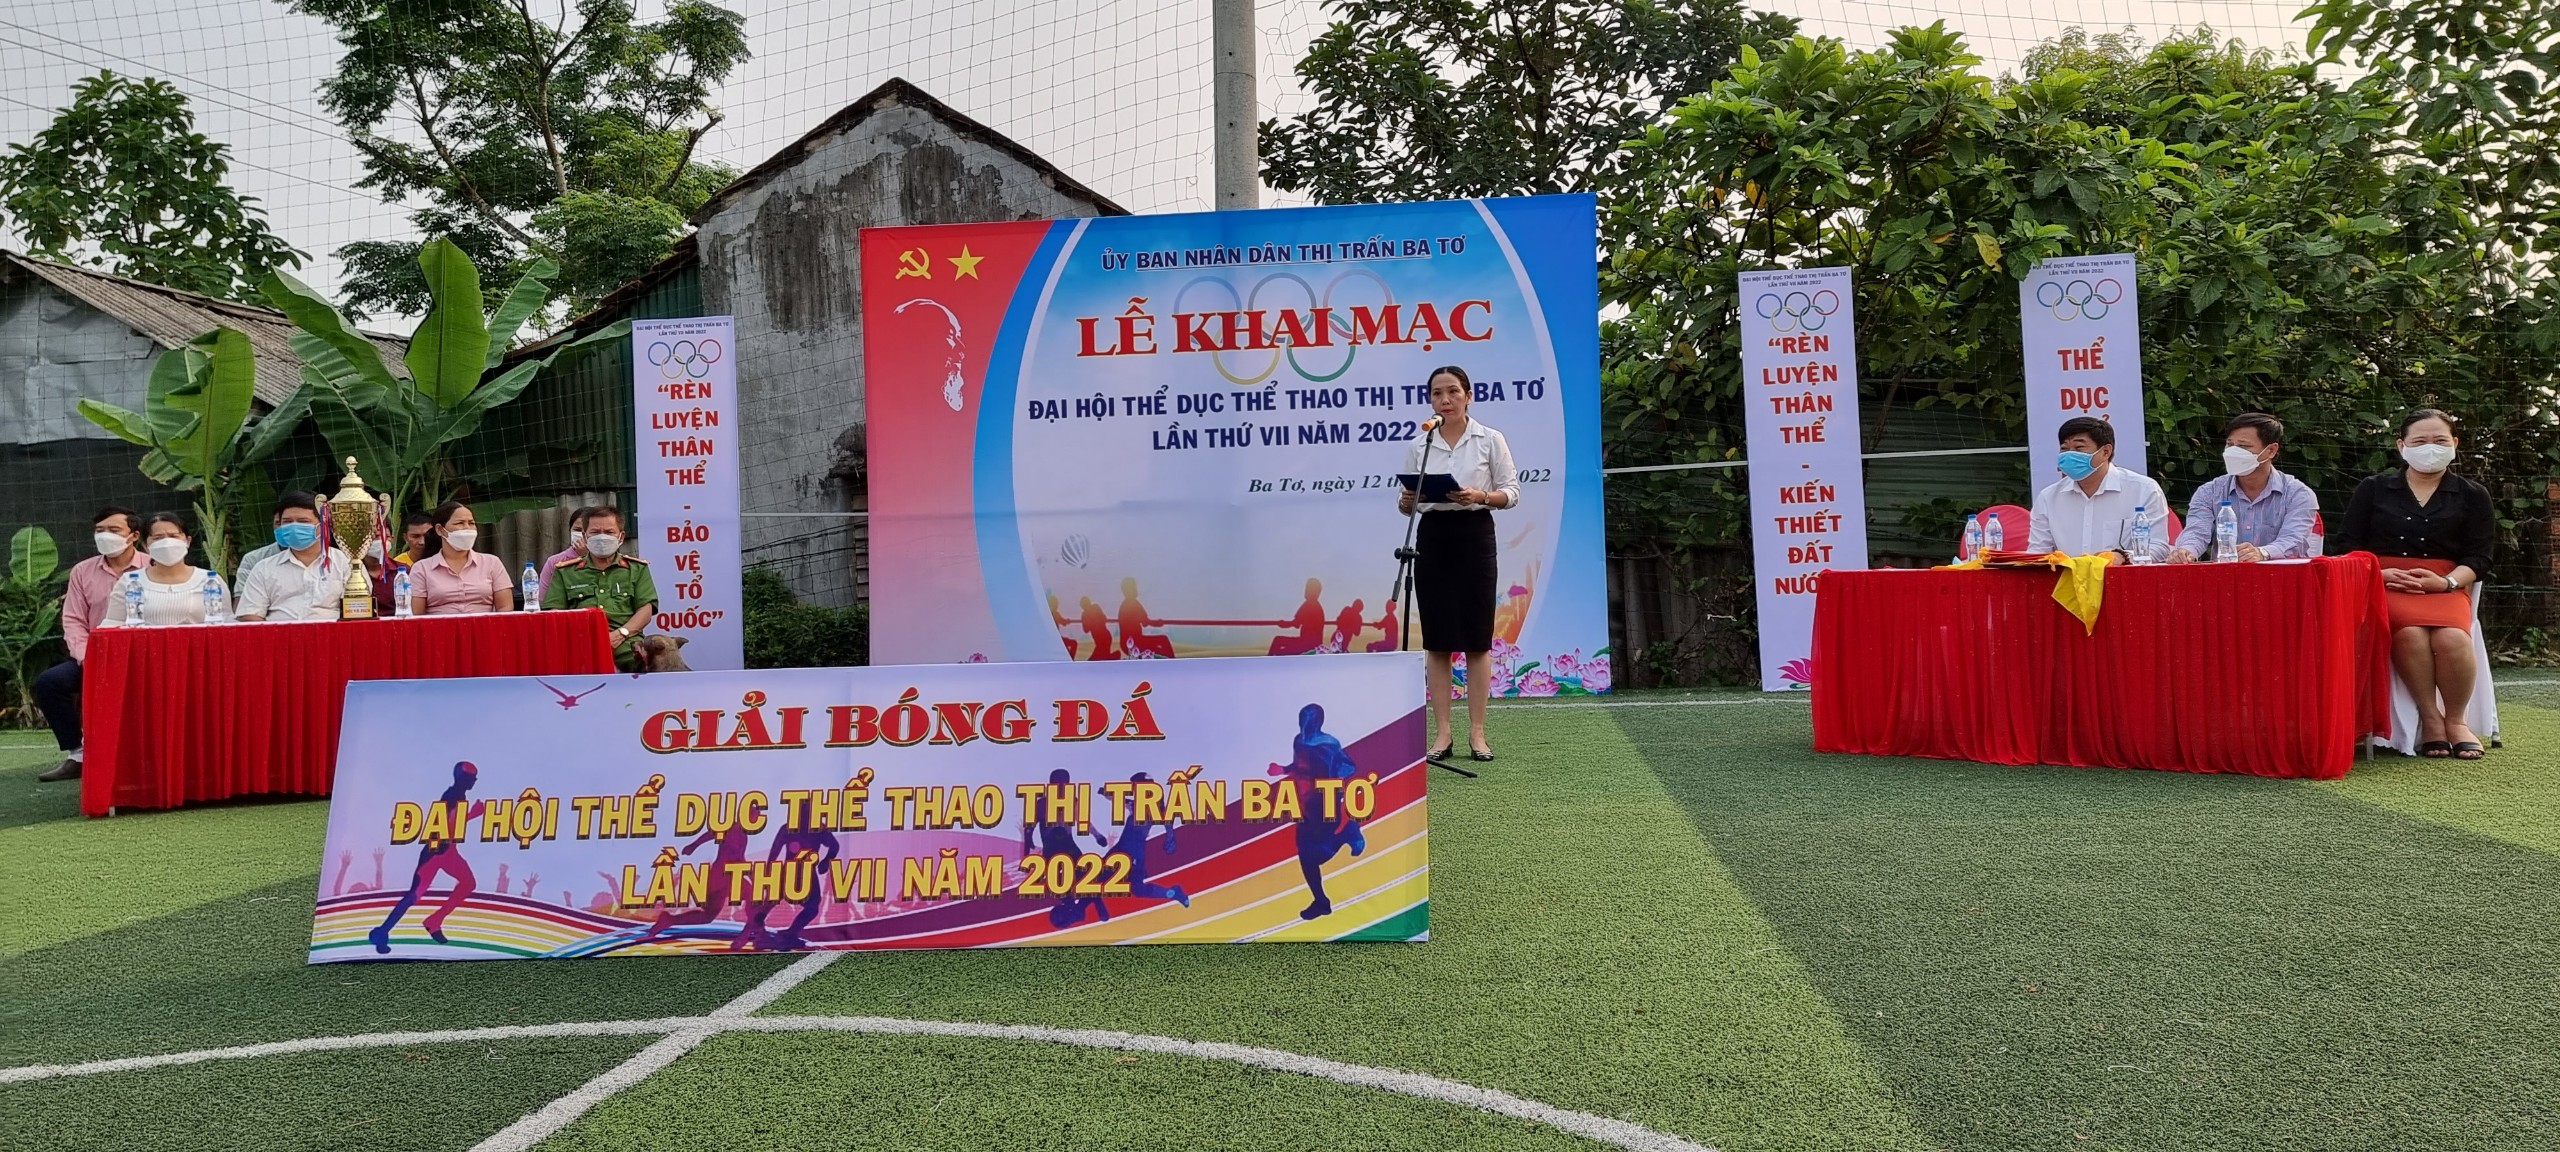 Thị trấn Ba Tơ: Khai mạc Đại hội thể dục thể thao lần thứ VII - năm 2022